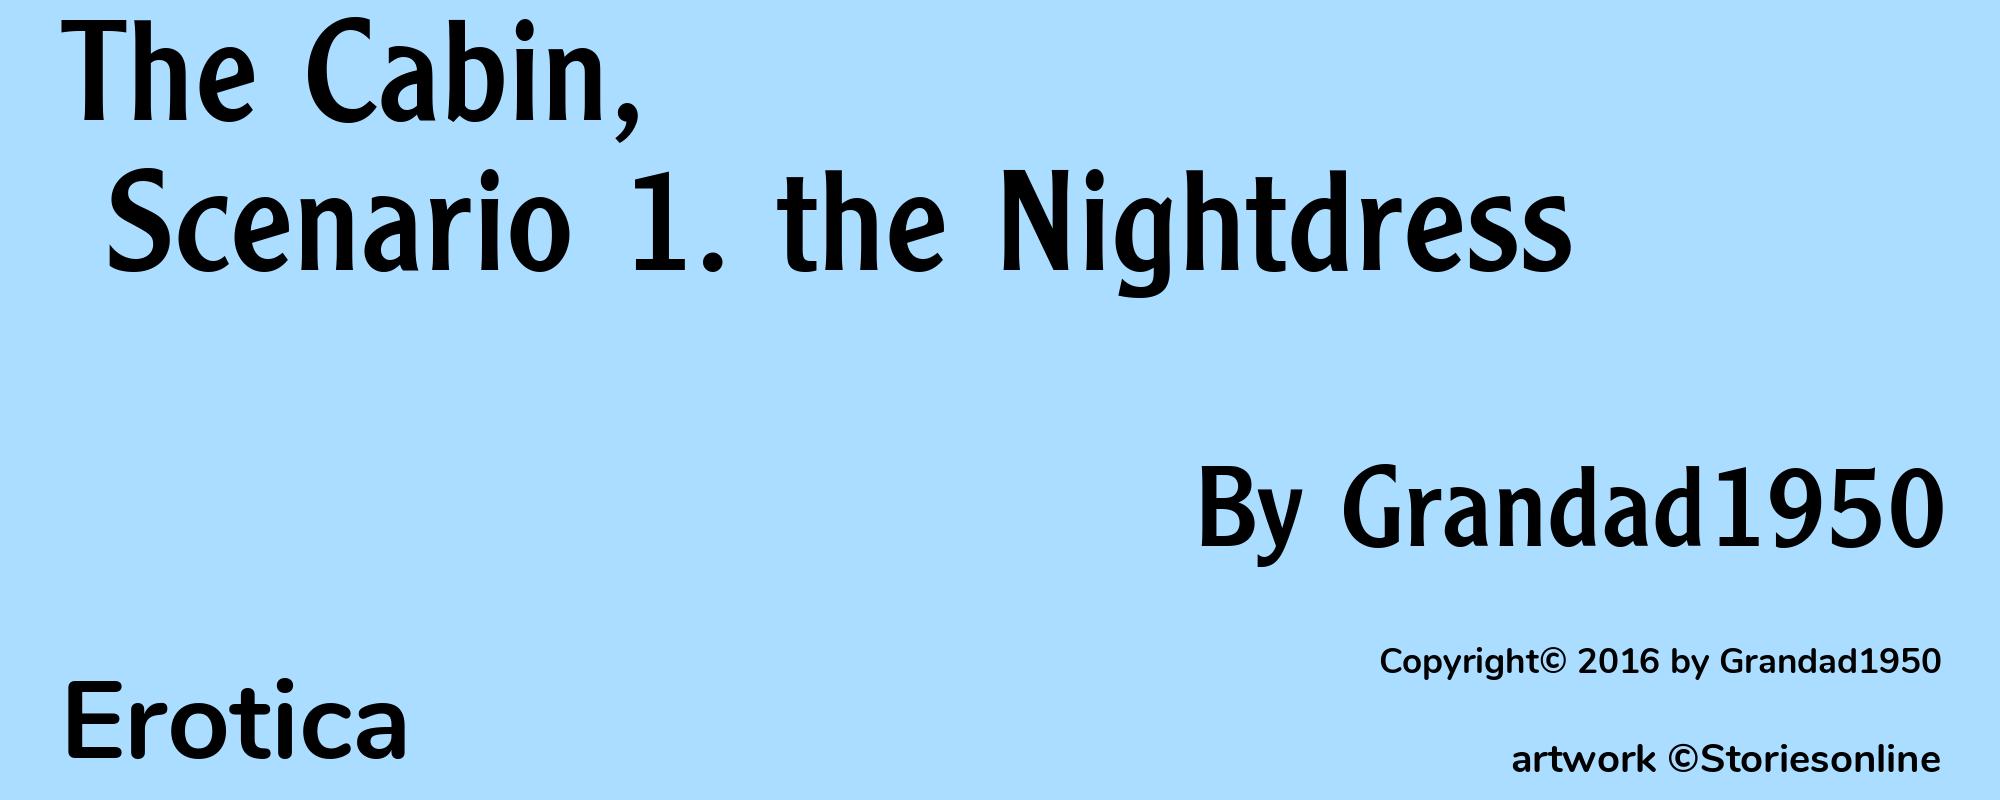 The Cabin, Scenario 1. the Nightdress - Cover